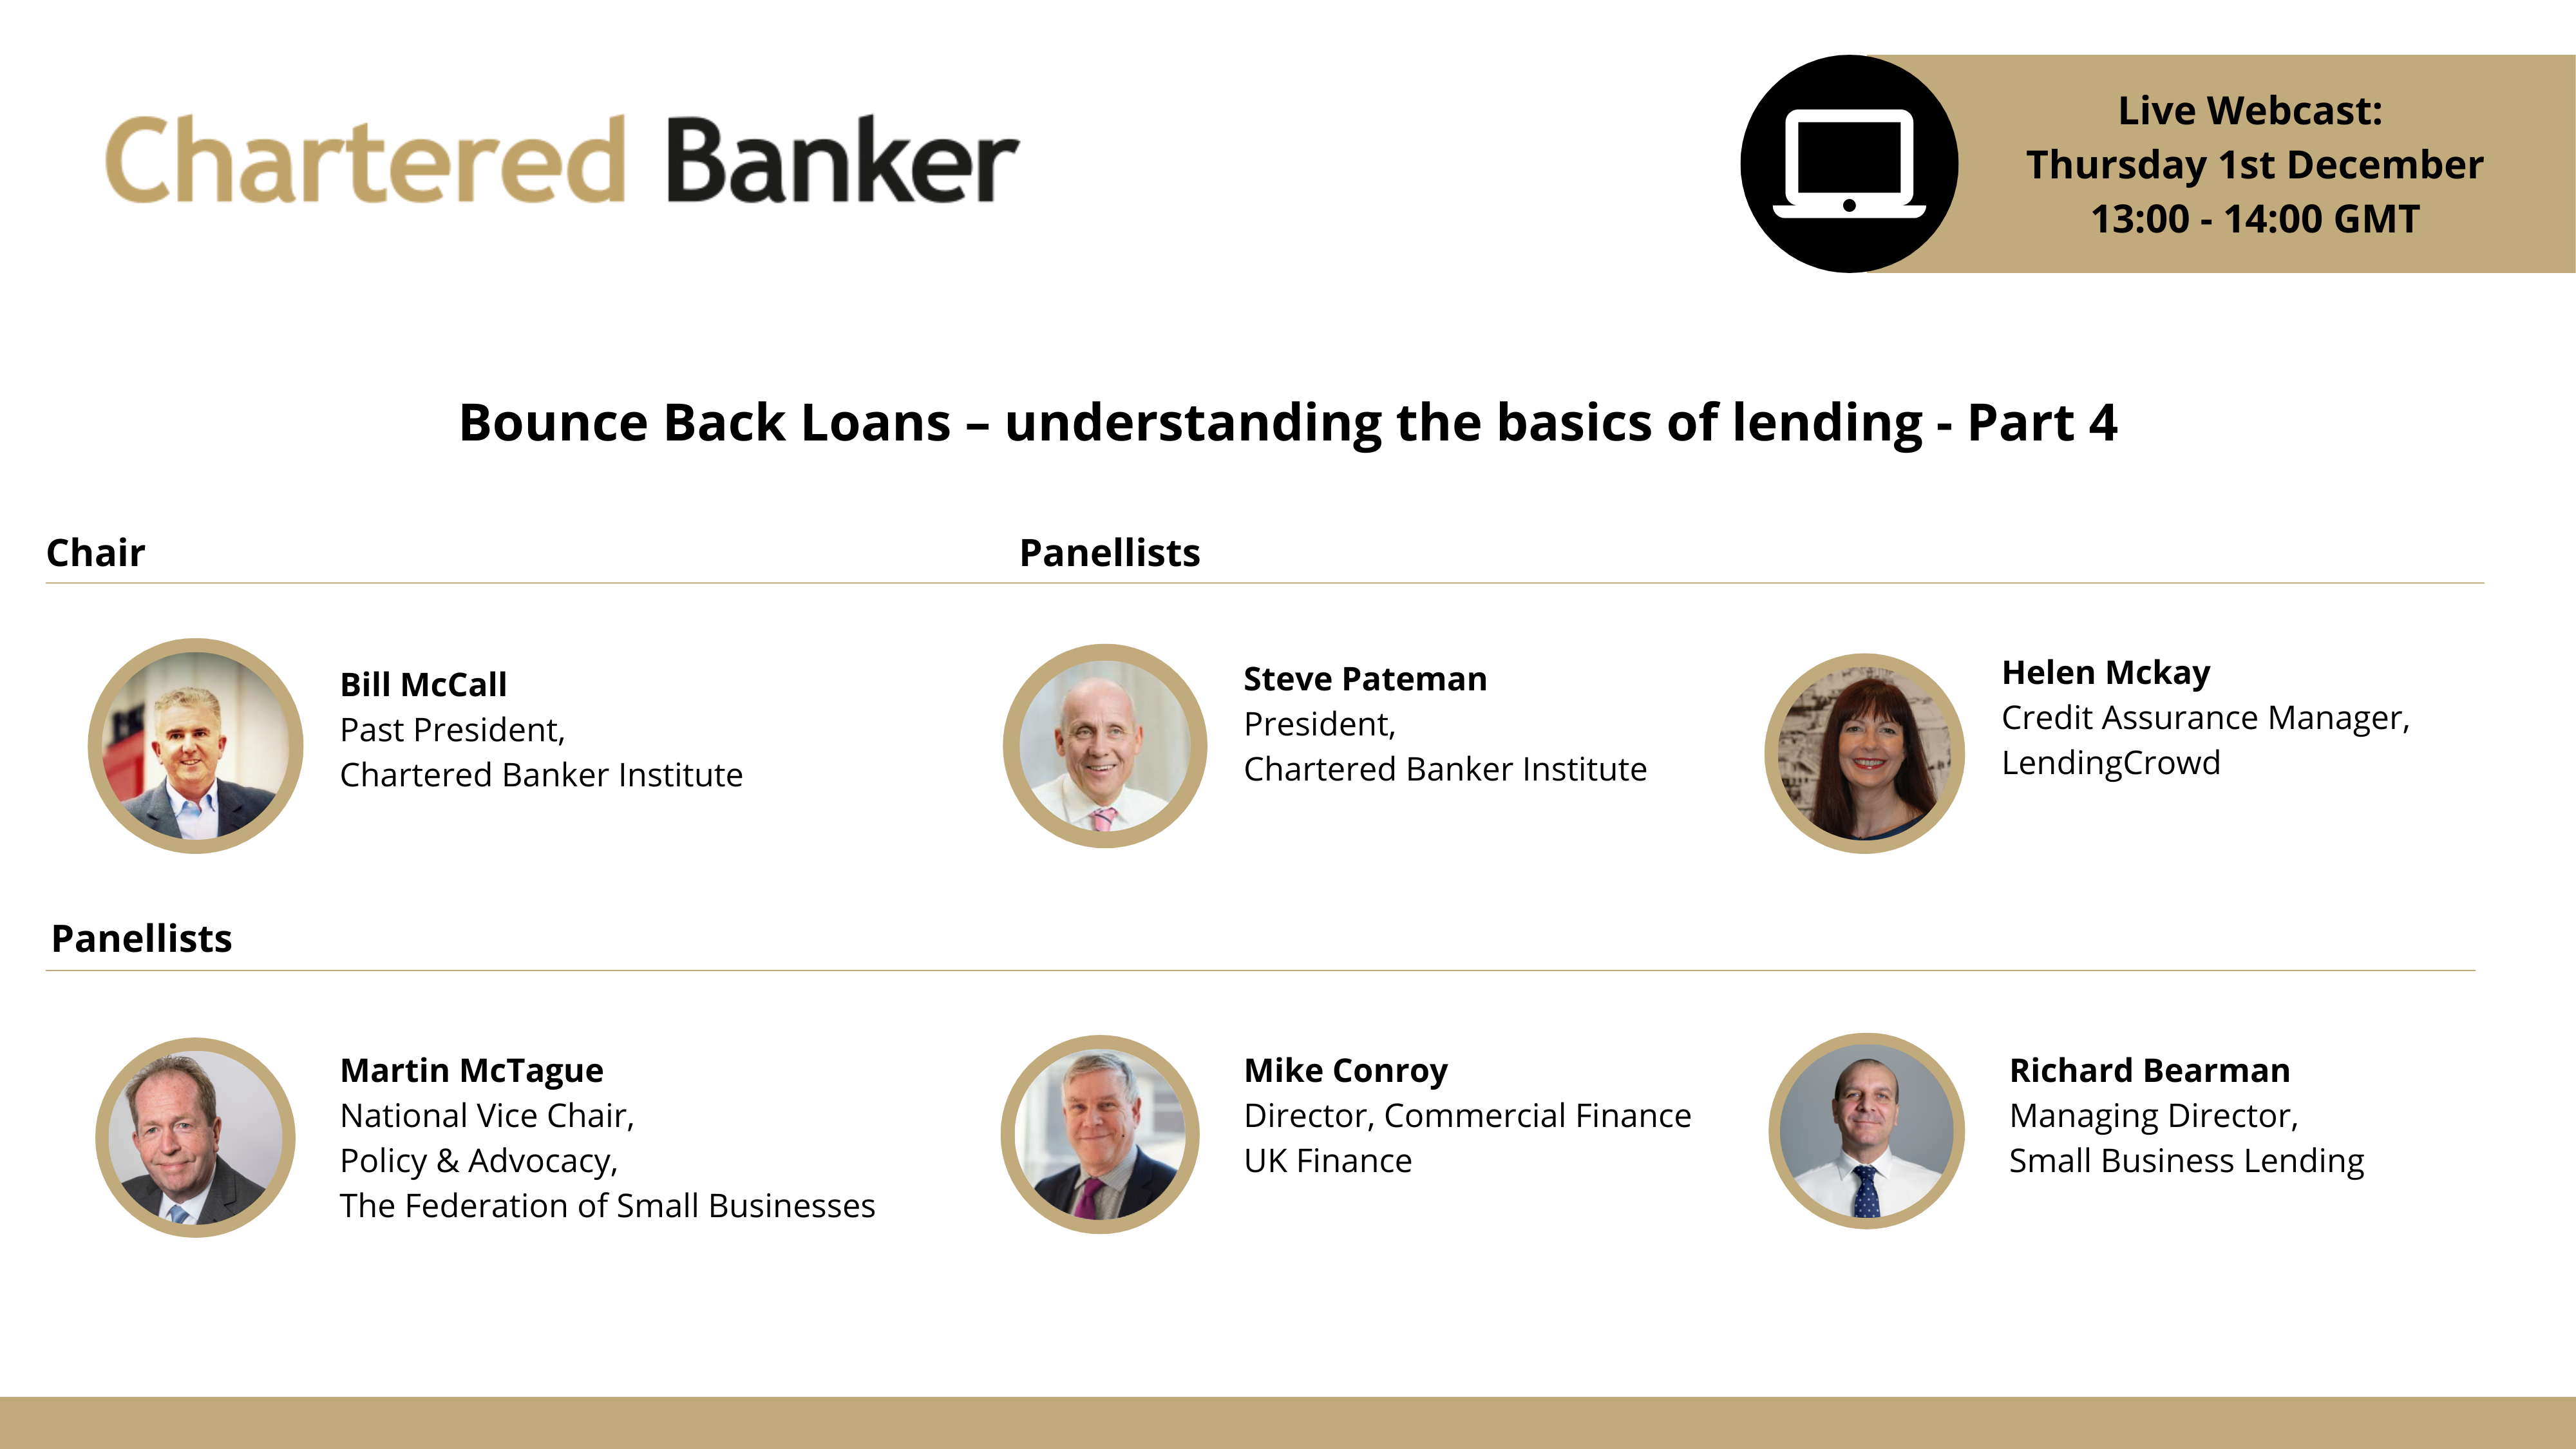 Bounce back loans - understanding the basics of lending (Part 4)